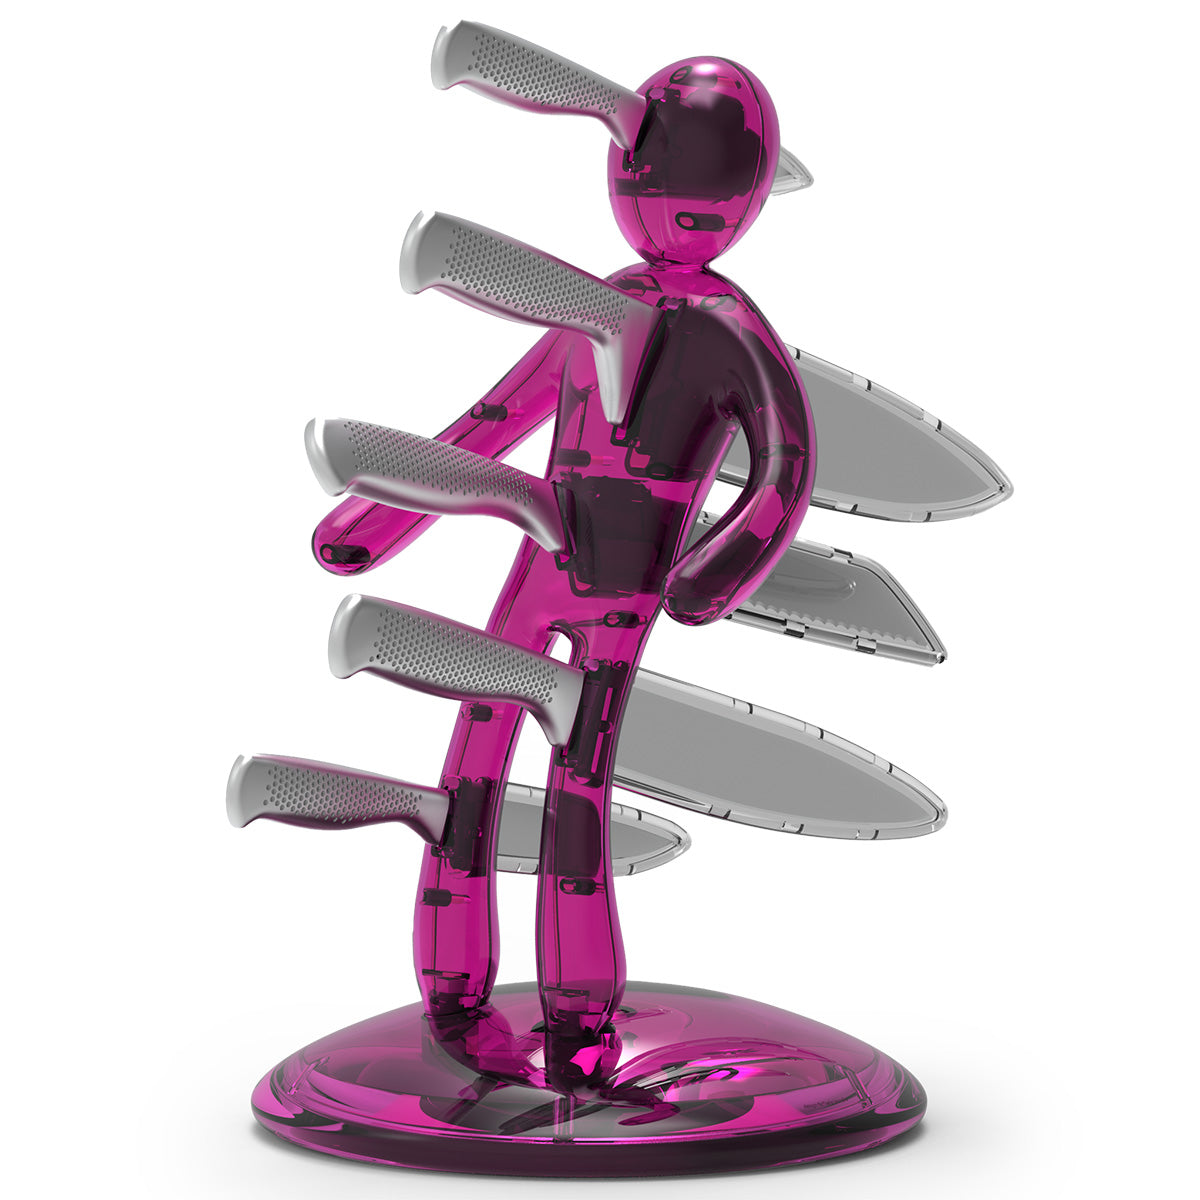 Voodoo/TheEx “Classic Edition” 刀具套装 - 粉色半透明塑料刀架